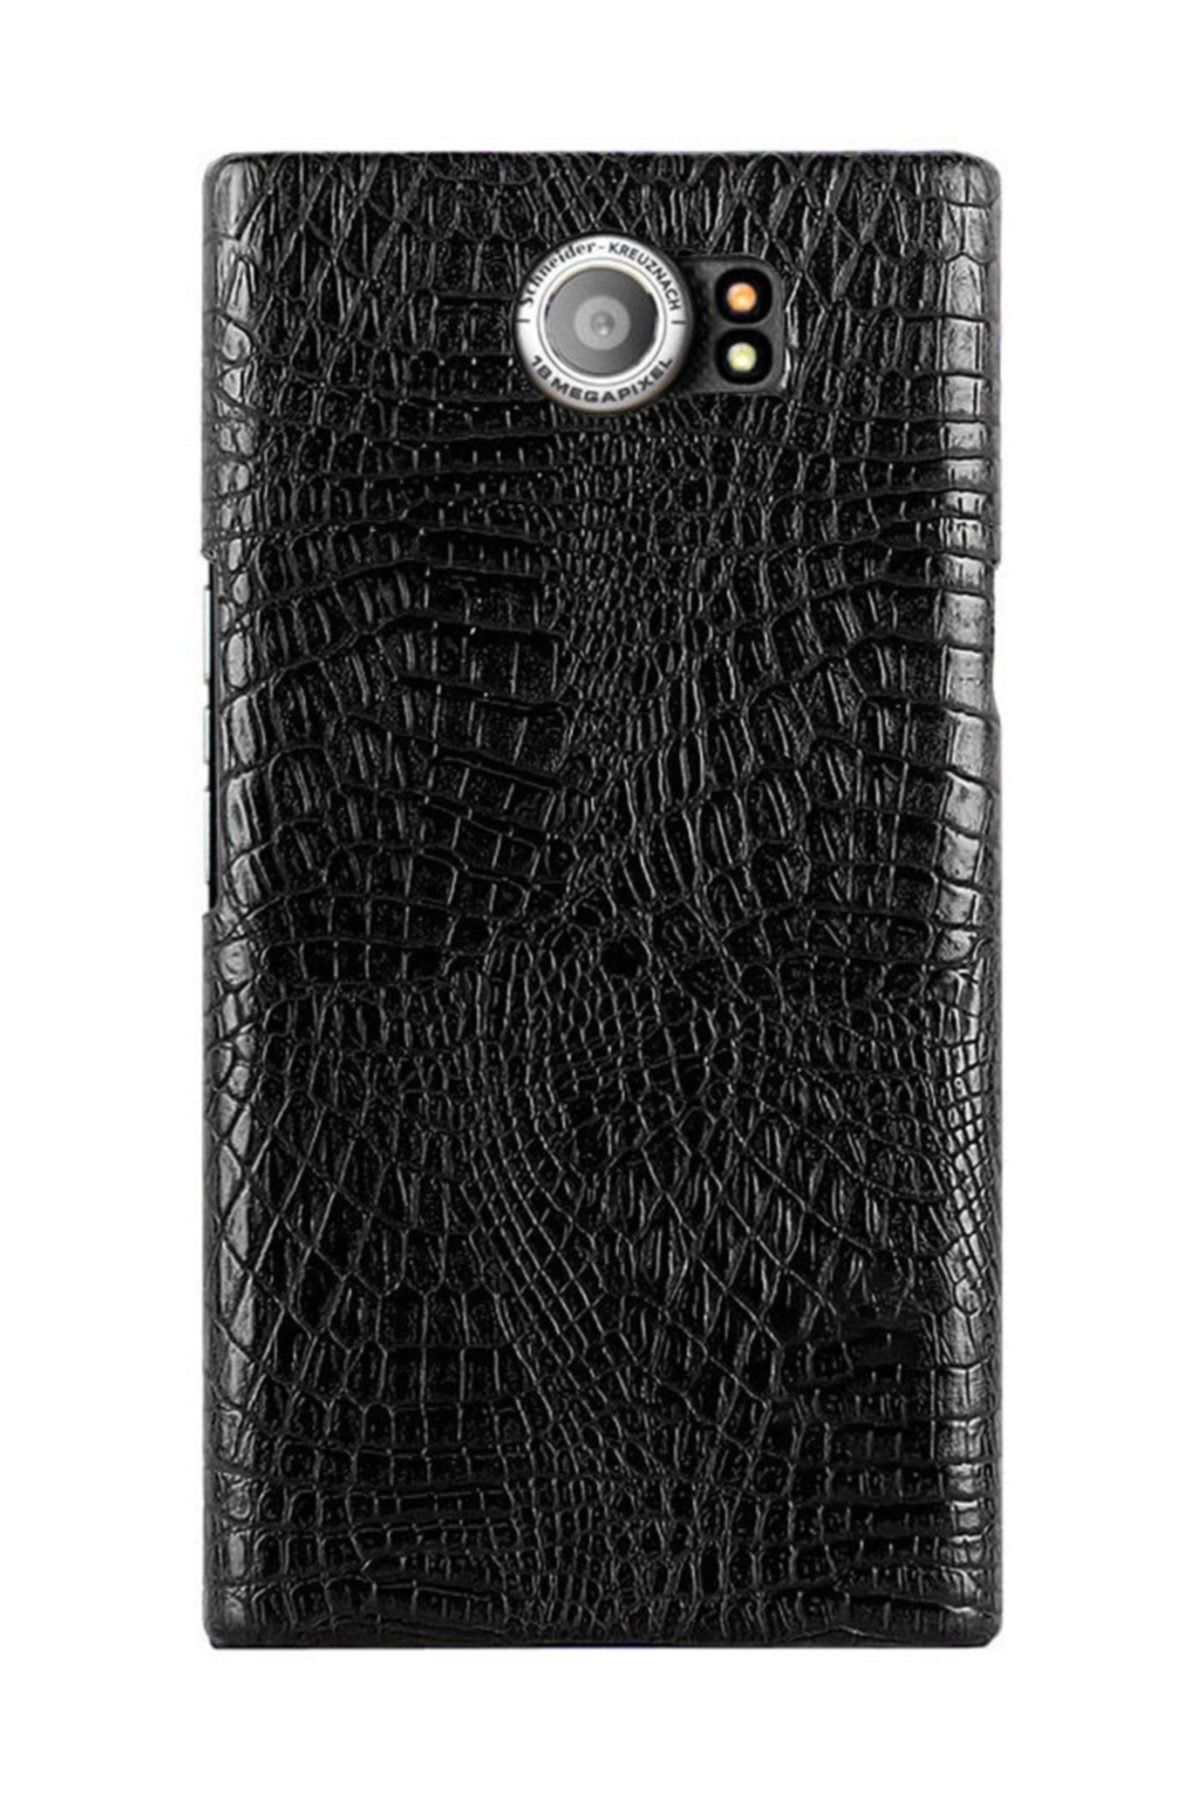 Microcase Blackberry Priv Crocodile Timsah Deri Kaplama Sert Rubber Kılıf - Siyah